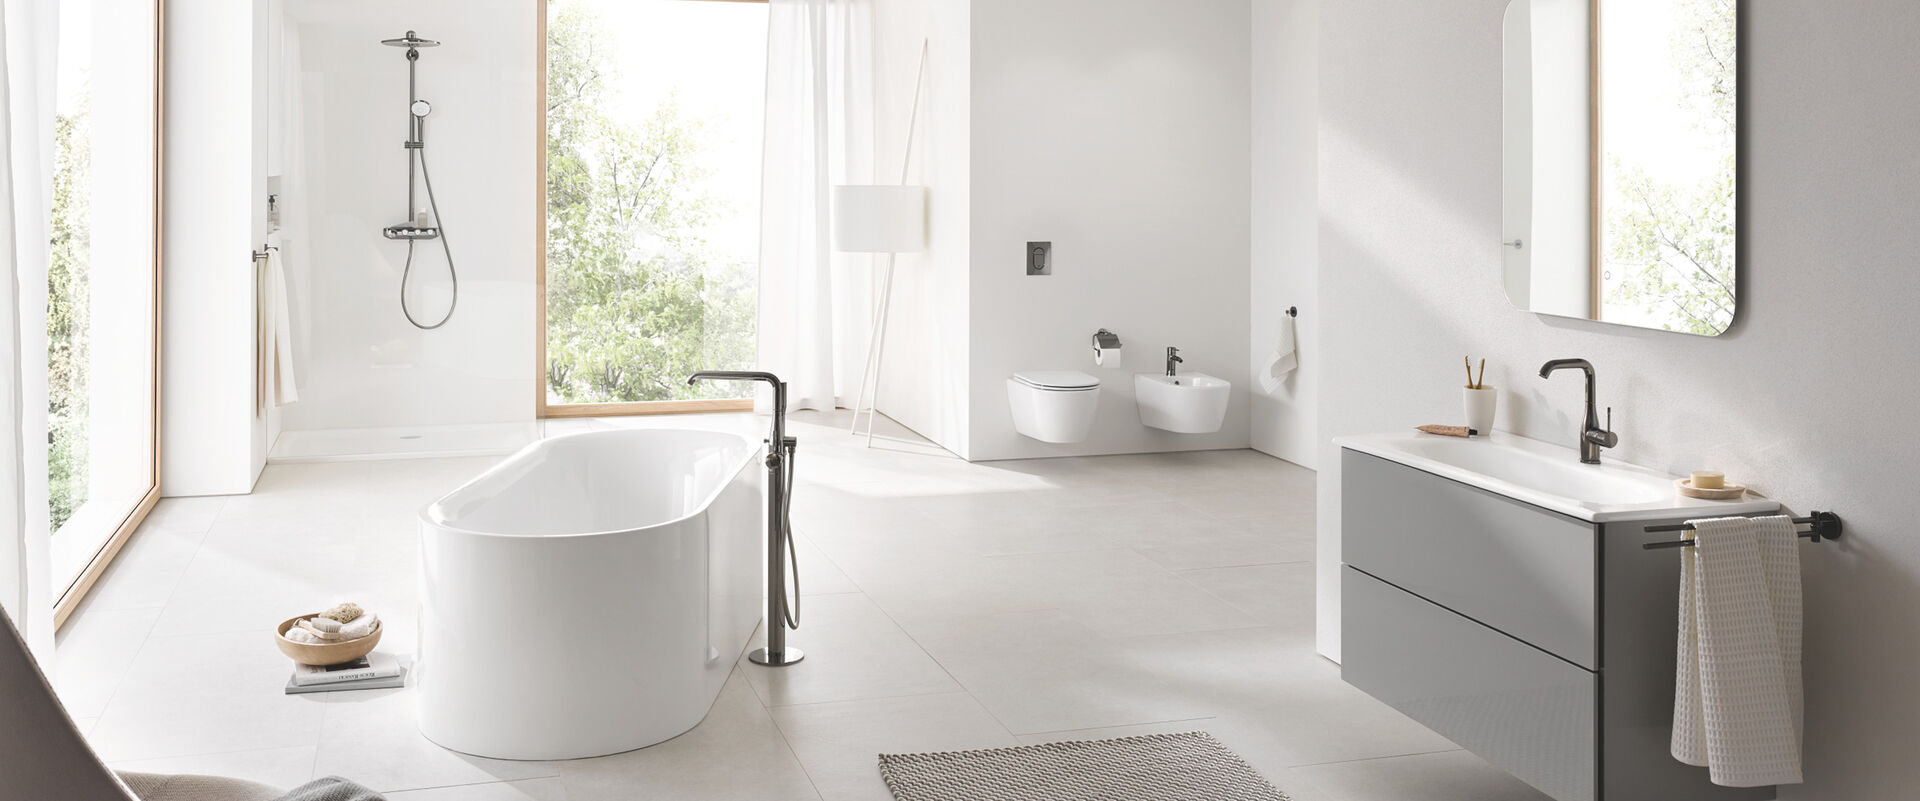 Die neues Designlinie Essence von Grohe lässt dieses Bad in hellem weiß strahlen.